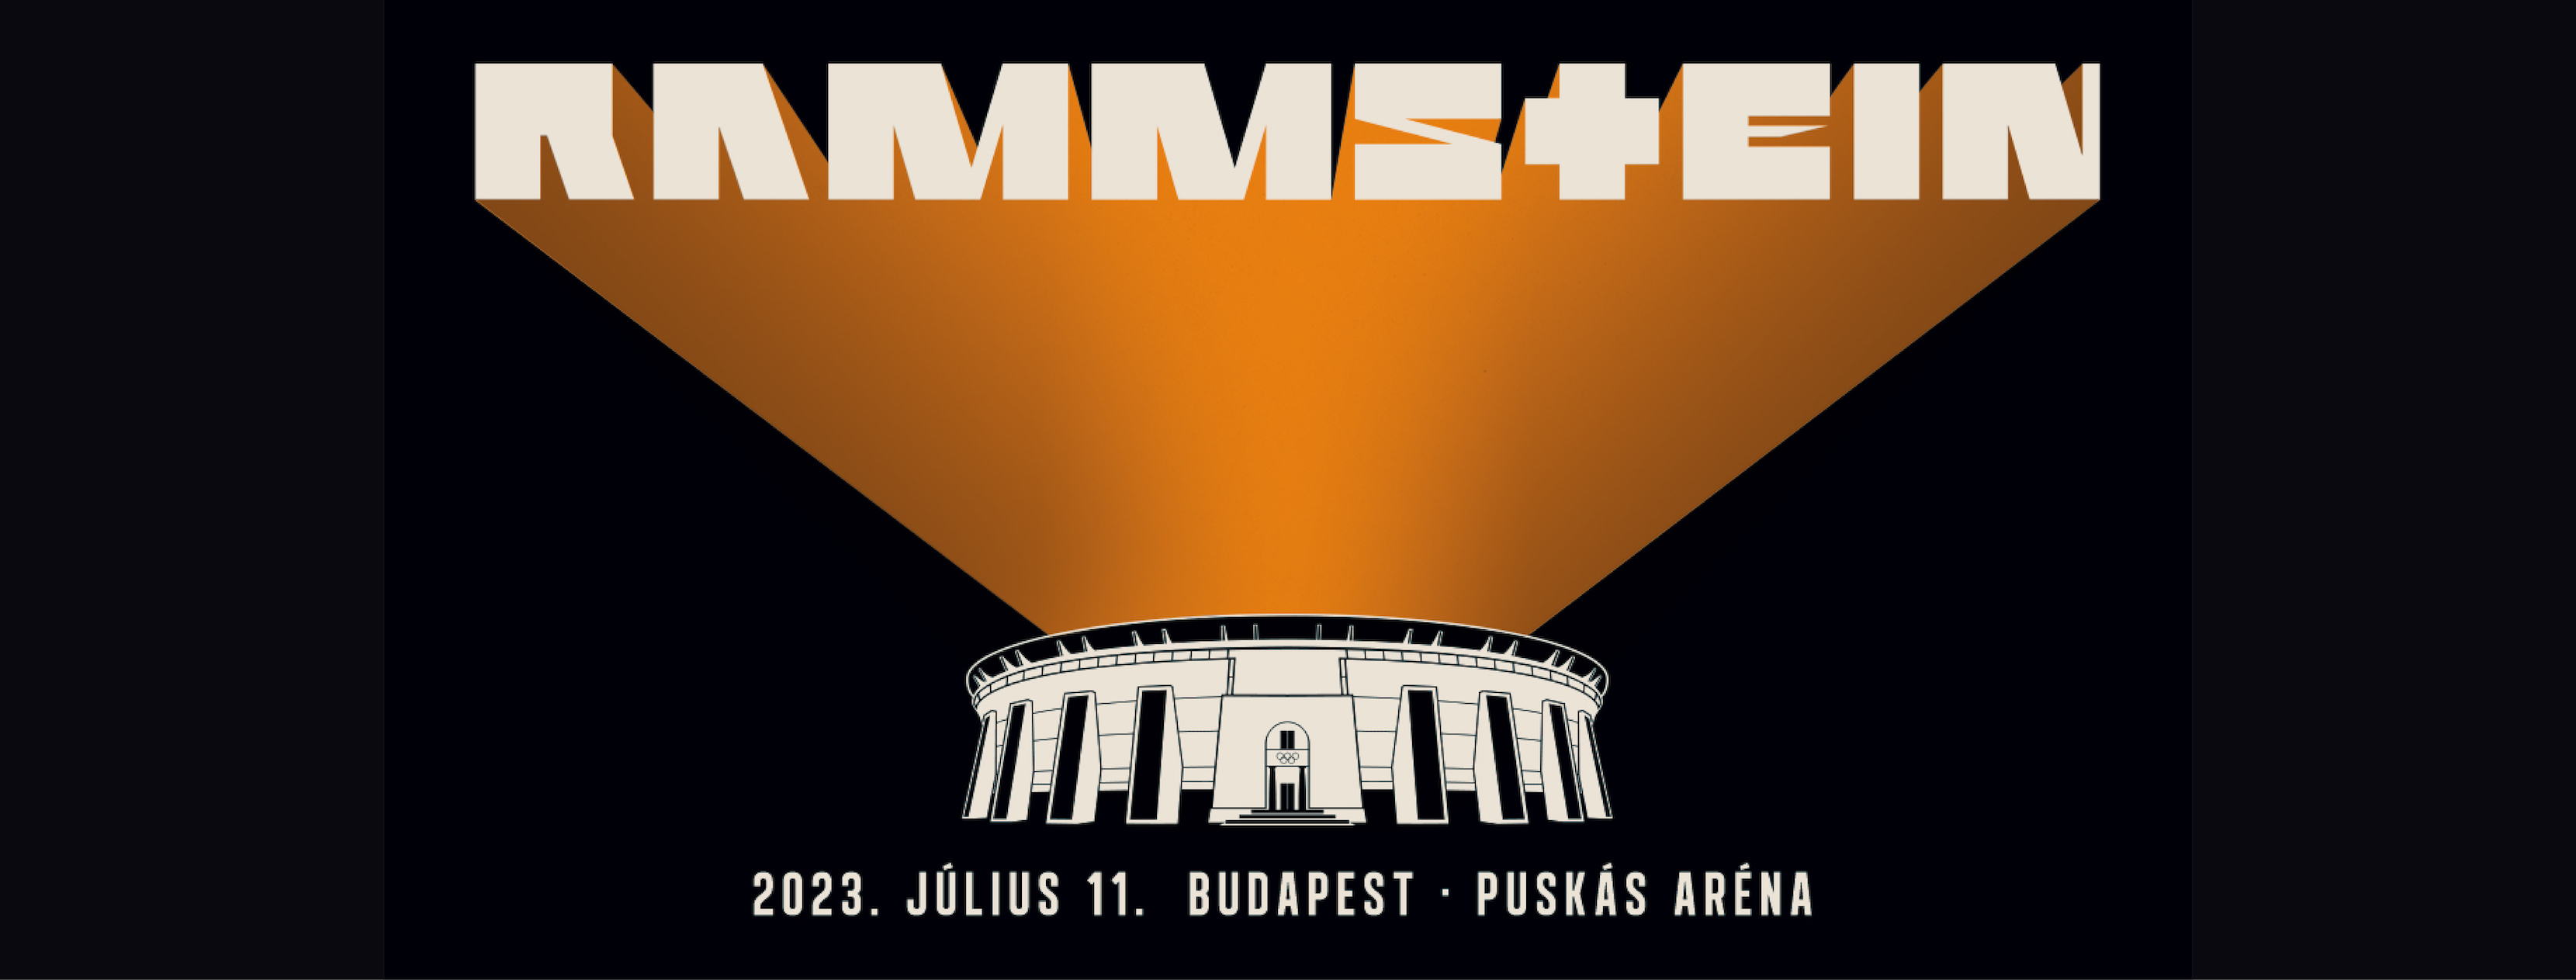 Rammstein, Budapest Sportaréna, 11 & 12 July 2023